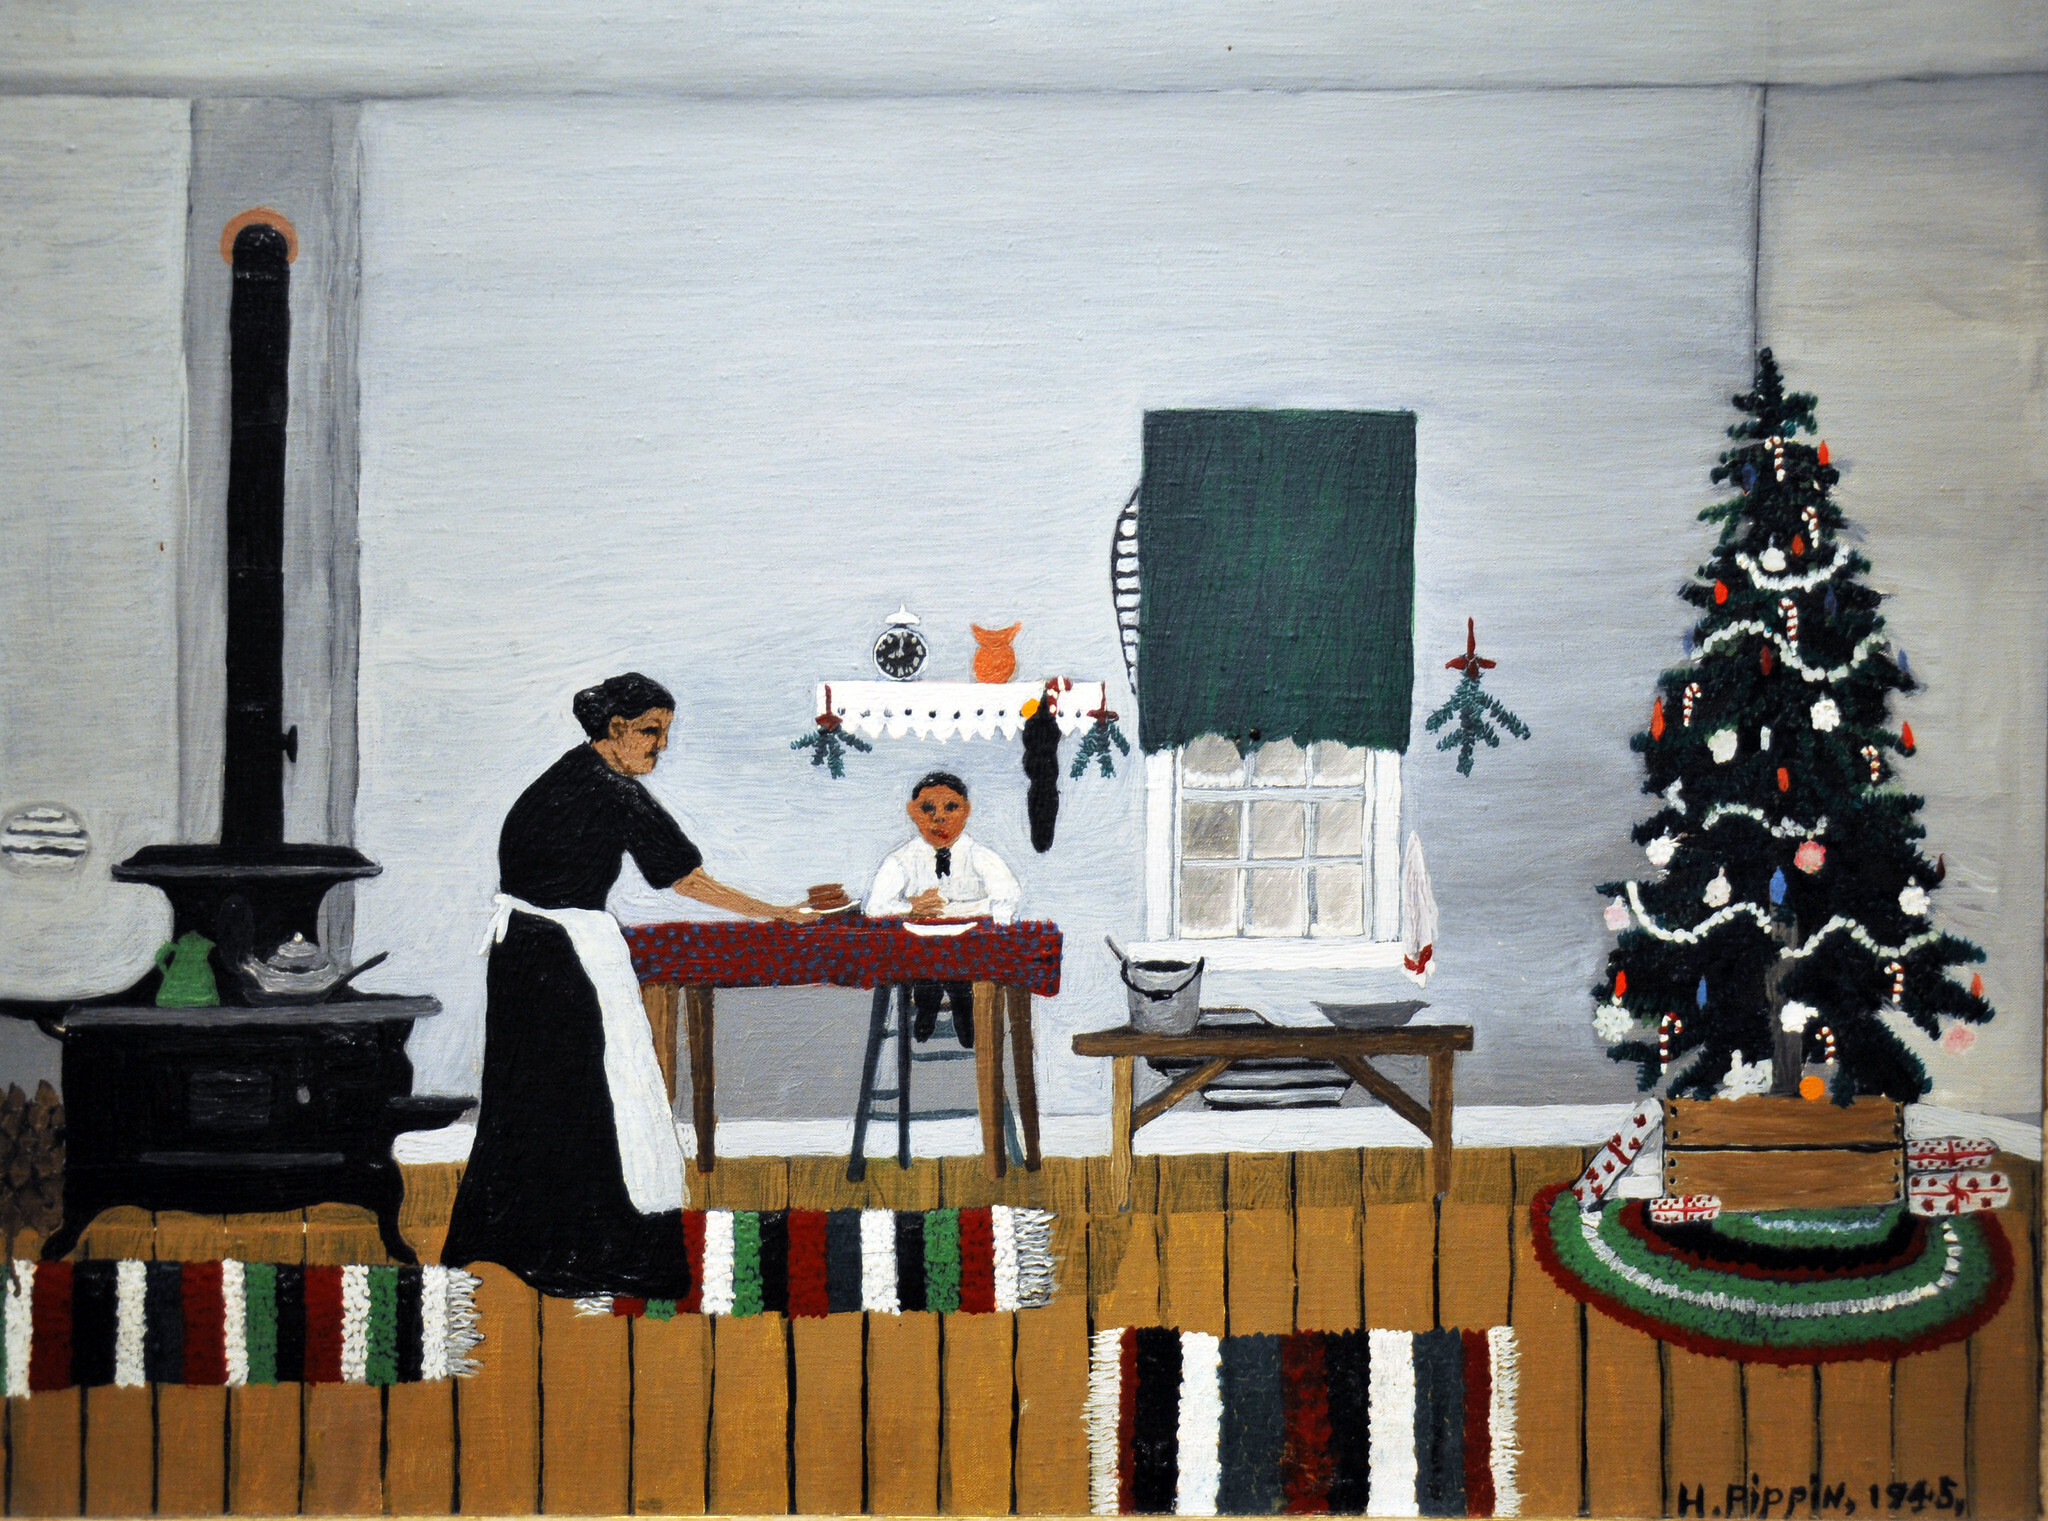 Matin de Noël, petit-déjeuner by Horace Pippin - 1945 - 53.6 x 66.5 cm Cincinnati Art Museum